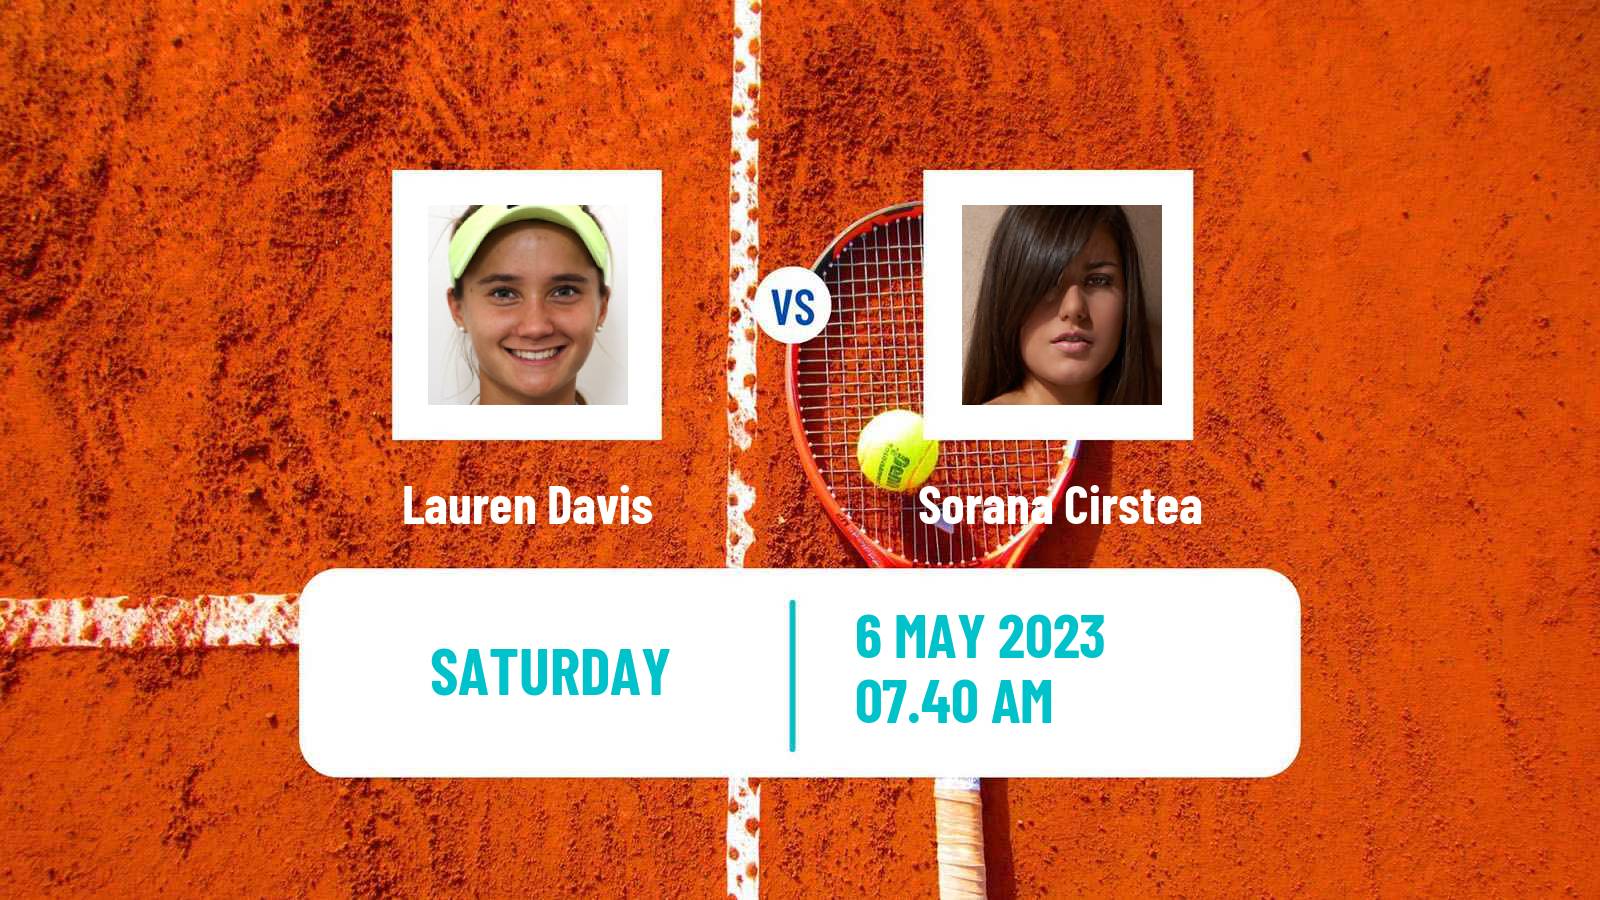 Tennis ATP Challenger Lauren Davis - Sorana Cirstea